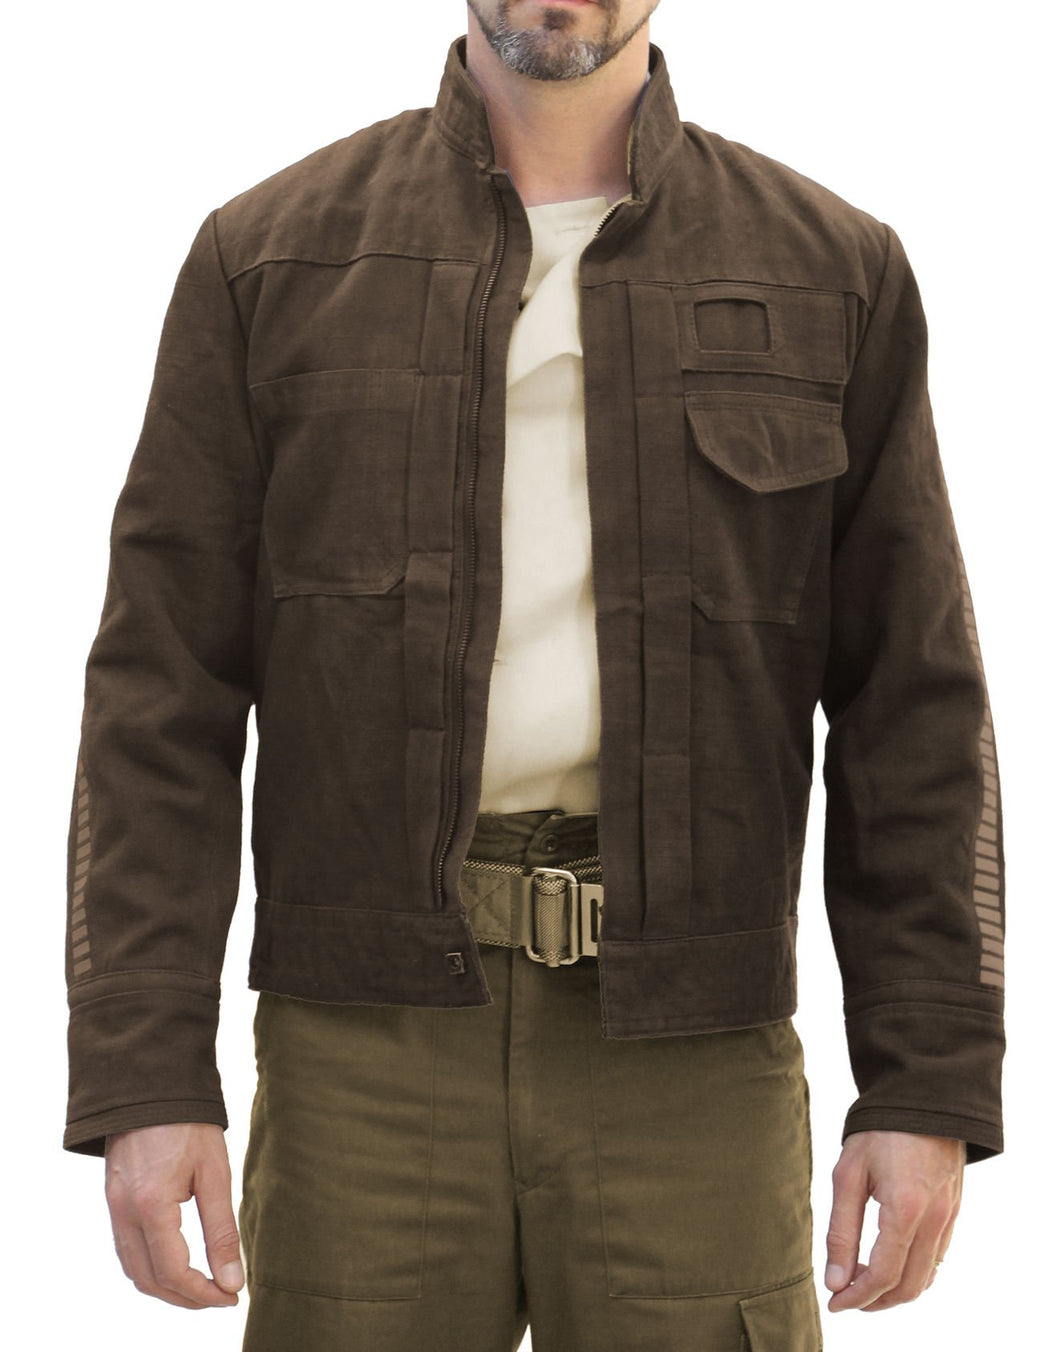 Magnoli Clothiers Star Wars Rogue Jacket Brown (Andor)